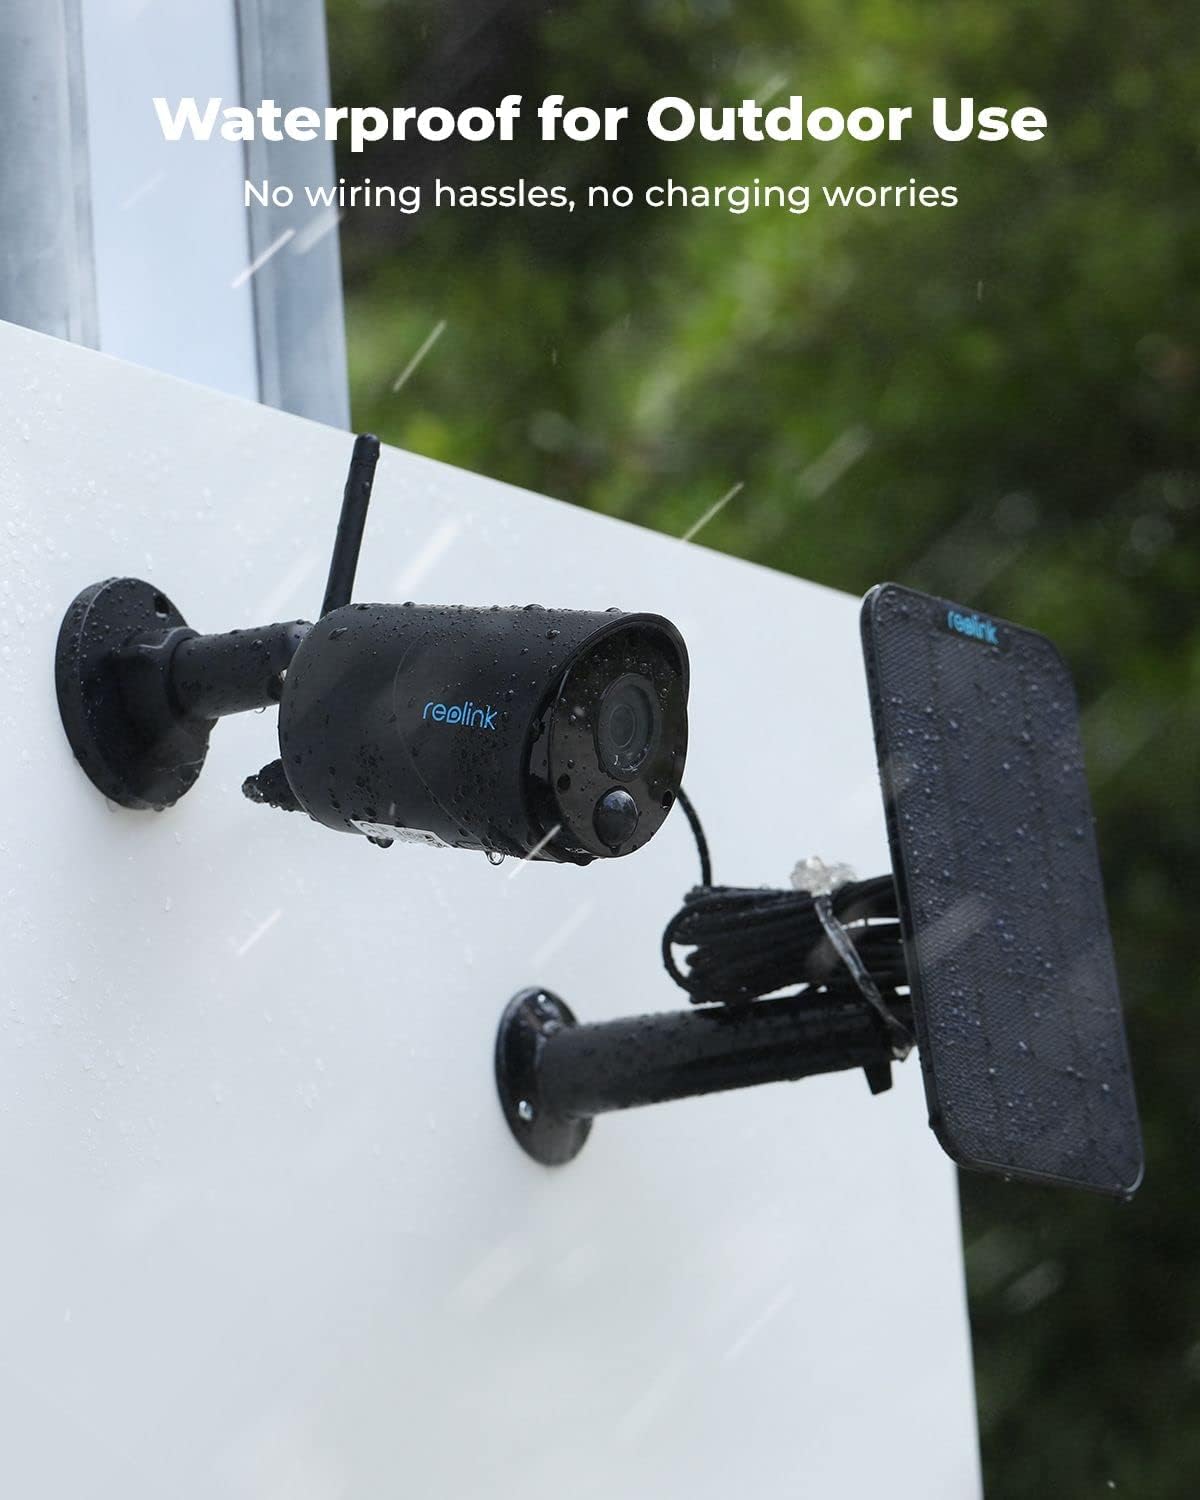 3 MP Solar-Überwachungskamera für den Außenbereich mit intelligenter Erkennung, Batteriebetrieb, 2-Wege-Audio, SD-Karte/Cloud-Speicher, Alexa-Kompatibilität – Argus Eco-Black + Solarpanel